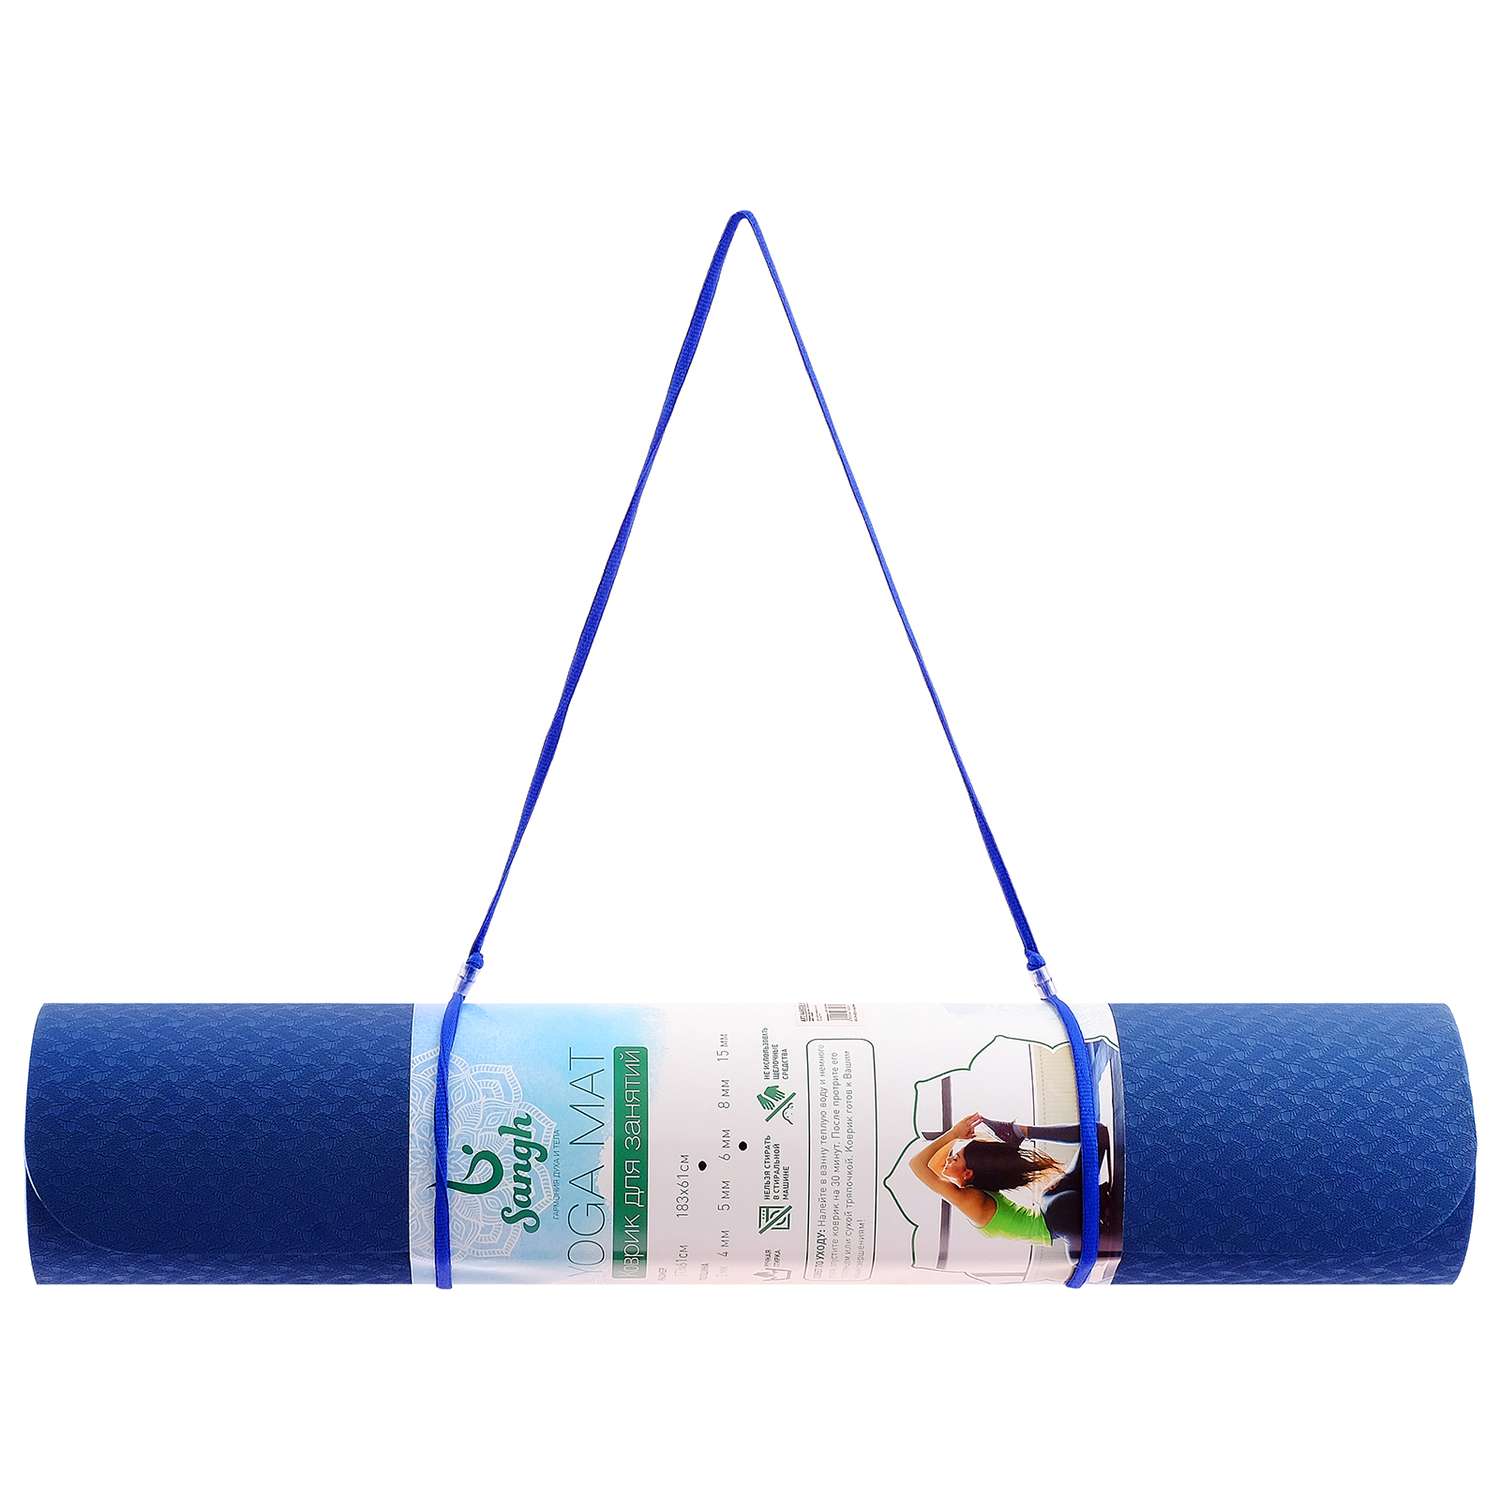 Коврик Sangh Для йоги двухцветный синий голубой - фото 6